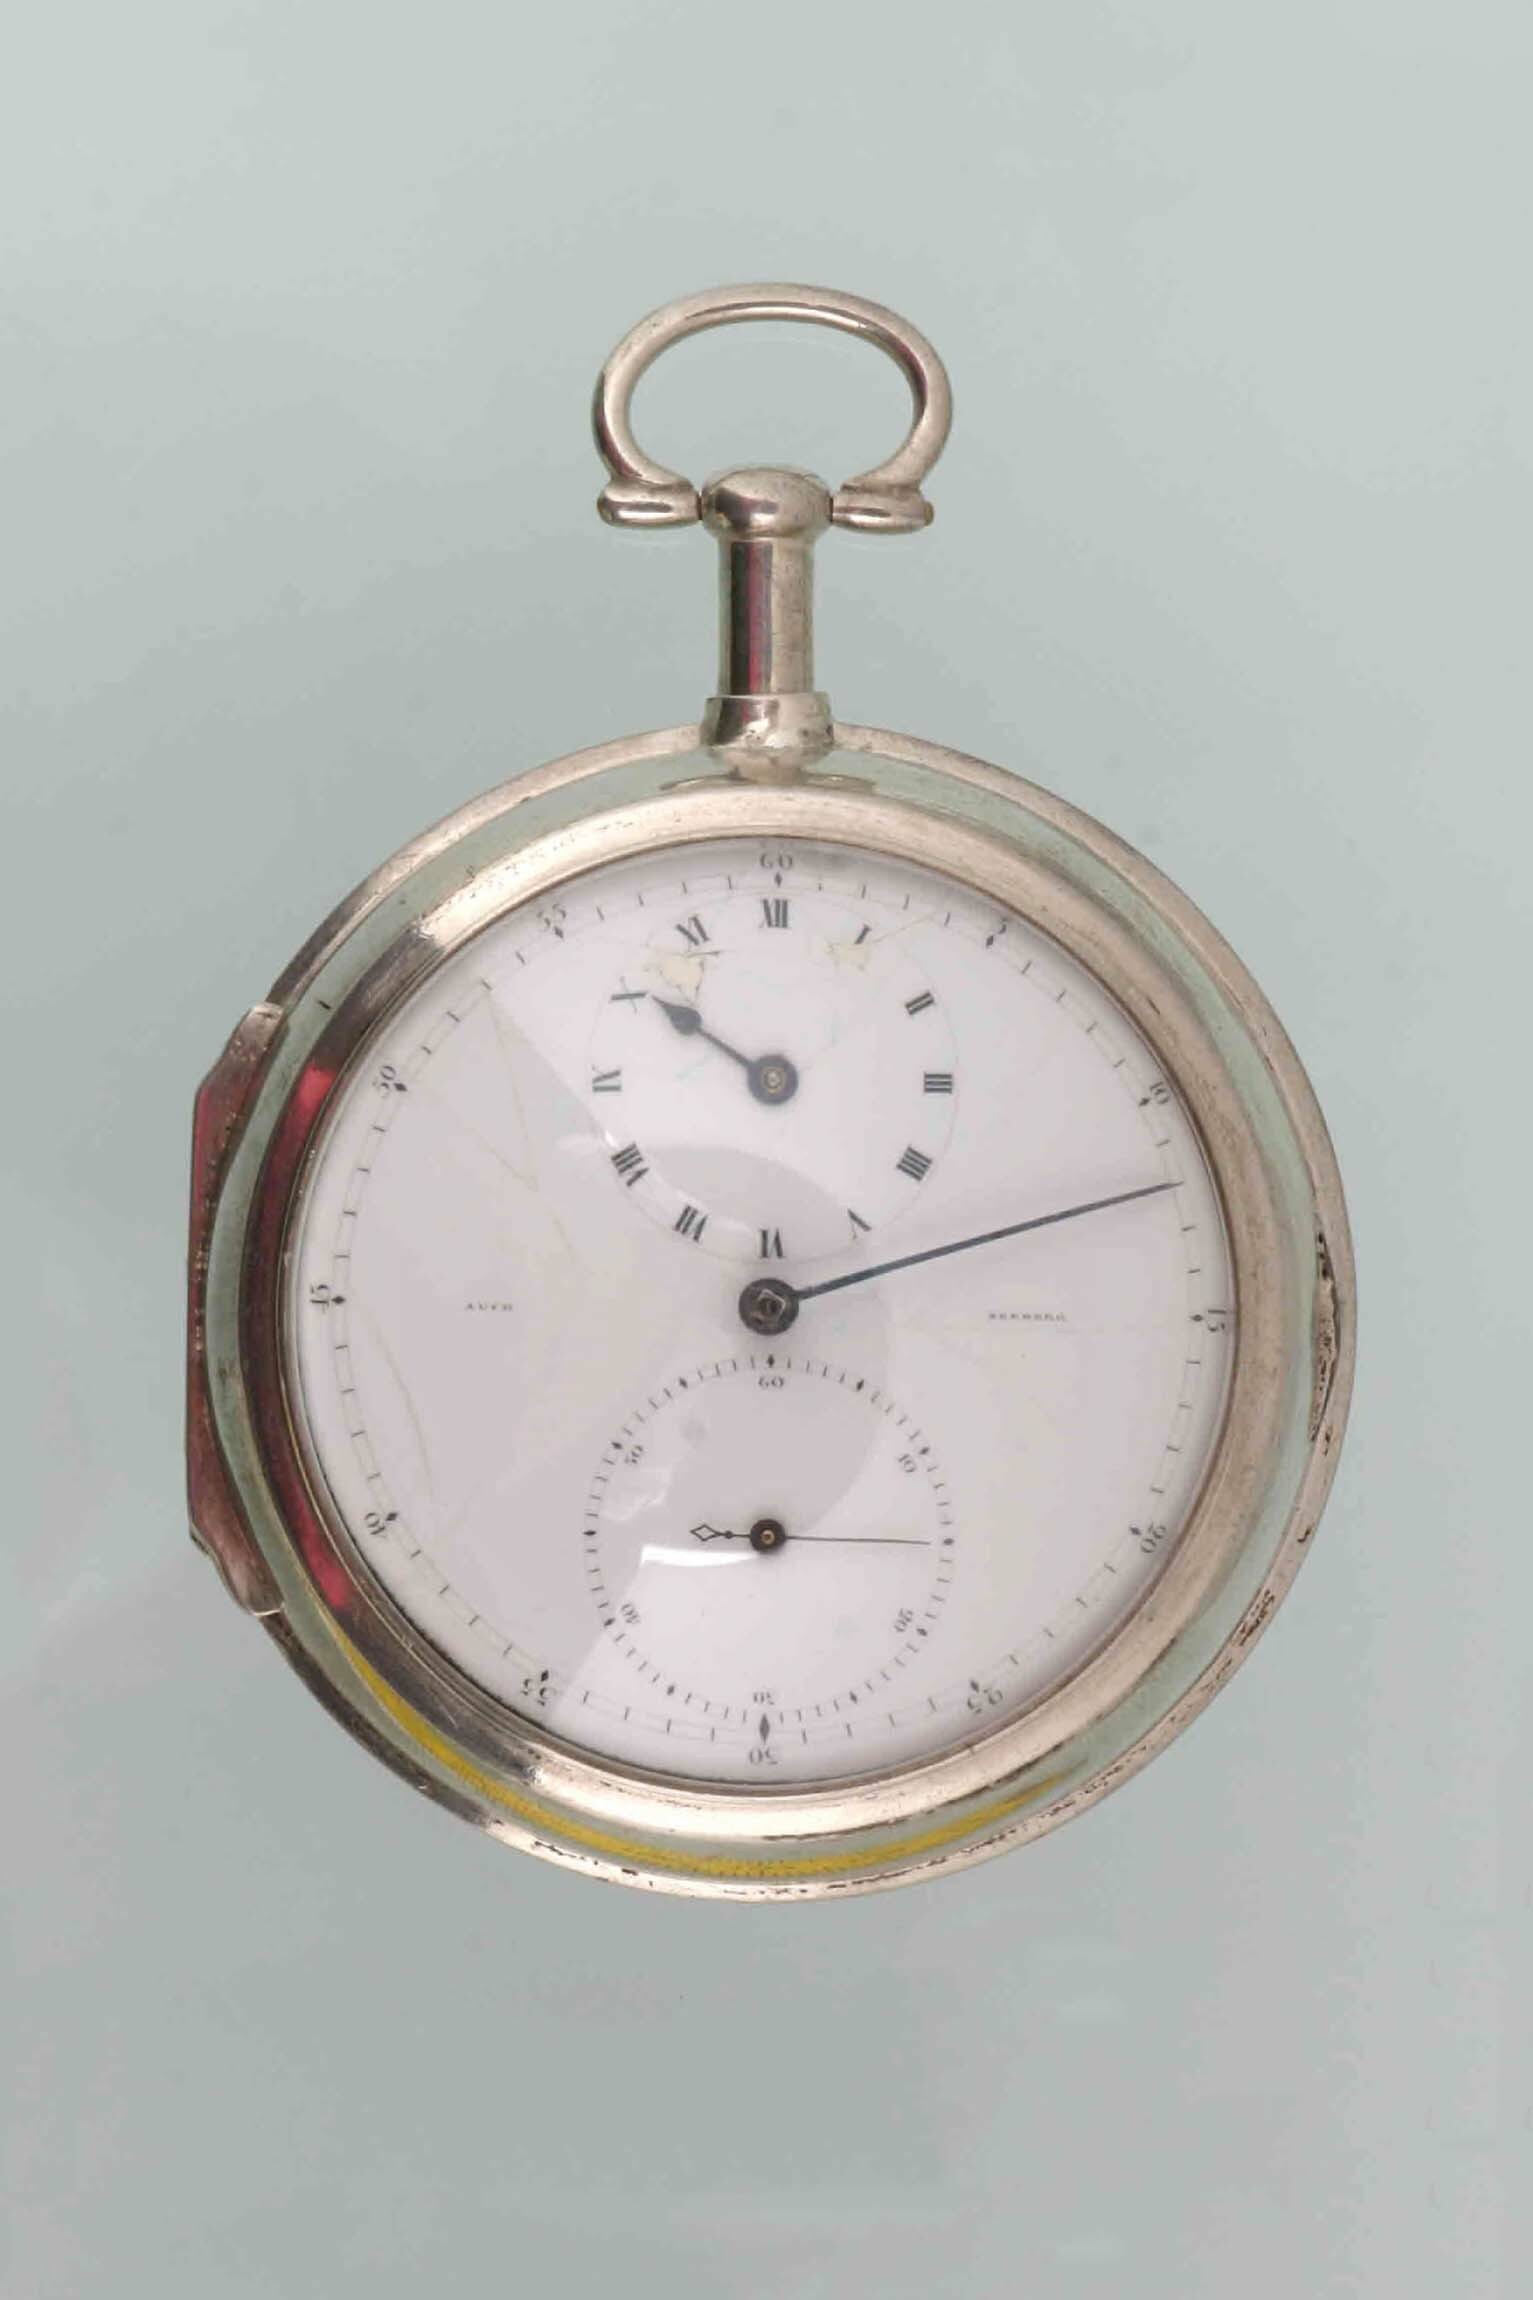 Taschenuhr, Auch, Seeberg, J. Auch und Sohn, Weimar, um 1820 (Deutsches Uhrenmuseum CC BY-SA)